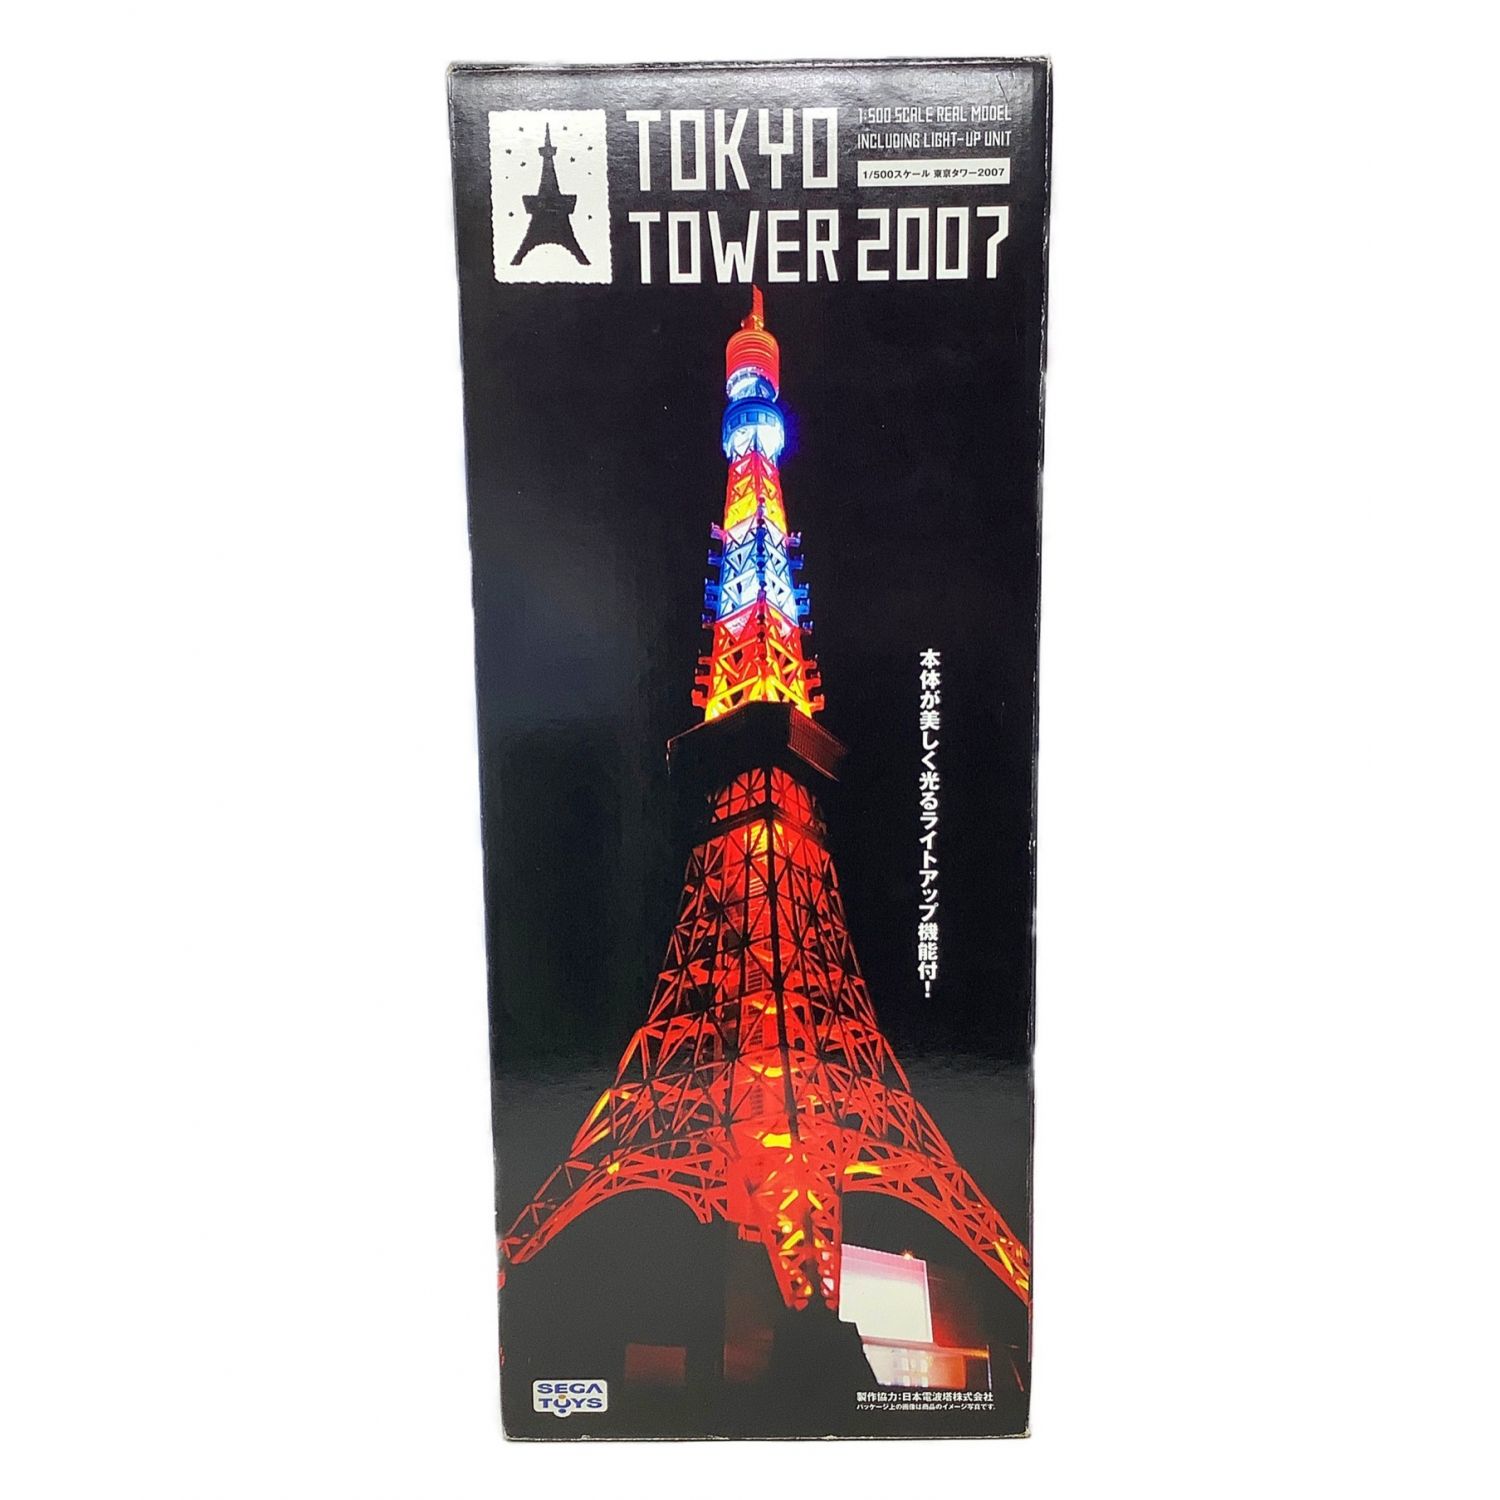 セガトイズ 東京タワー2007 500スケールモデル - lesjardinsdesouvre.com